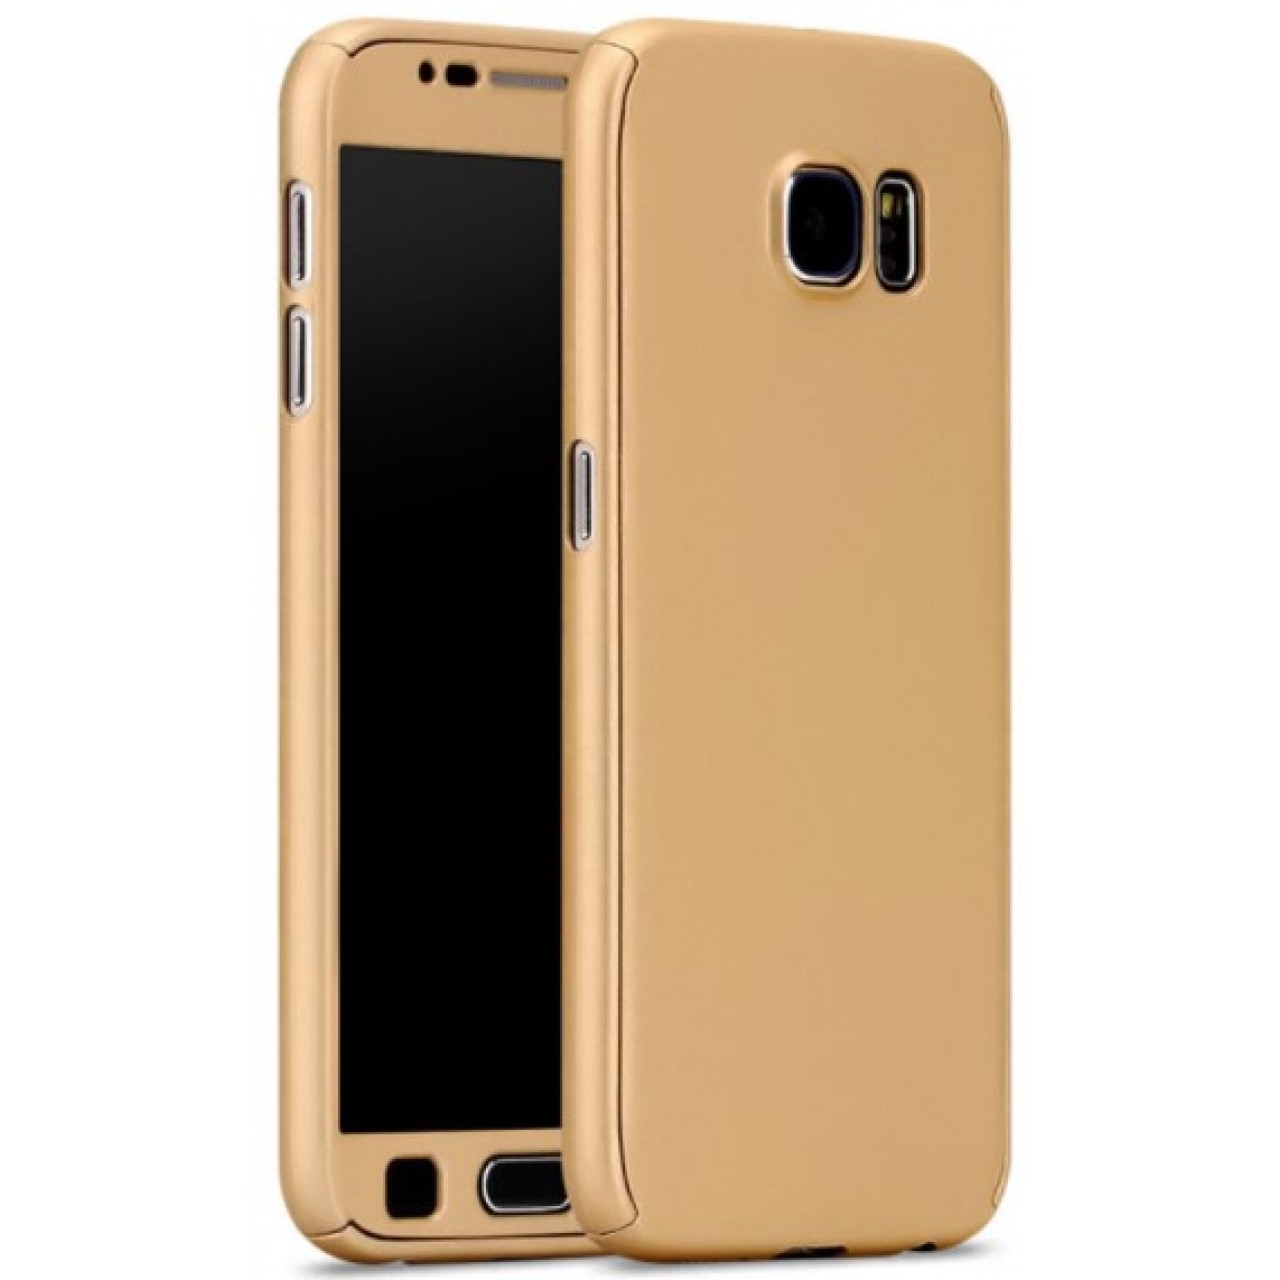 Θήκη Samsung Galaxy S7 Edge Hybrid 360 Full body - 3111 - Χρυσό - OEM